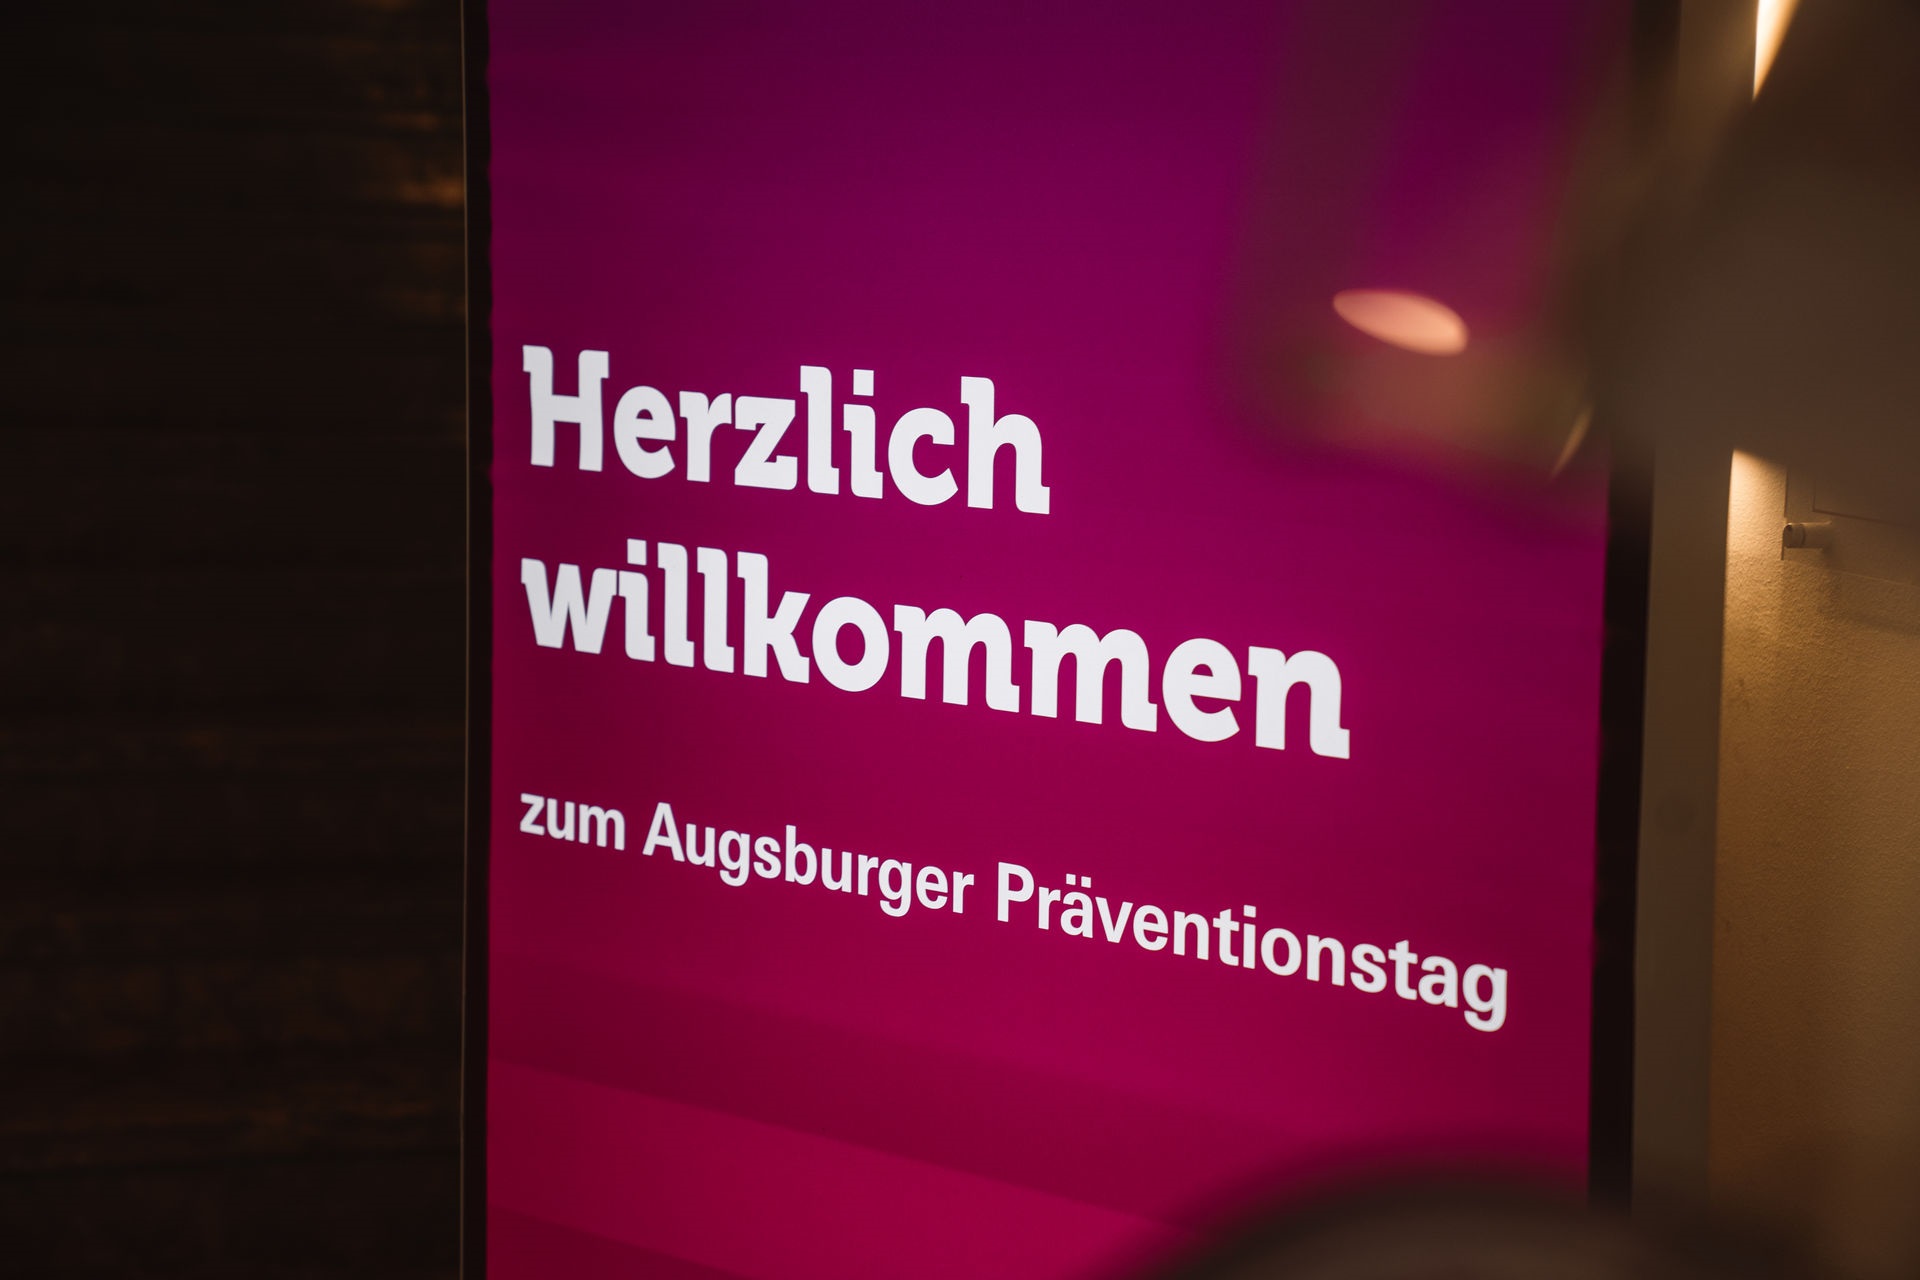 Magentafarbener Aufsteller mit der Aufschrift "Herzlich willkommen zum Augsburger Präventionstag"